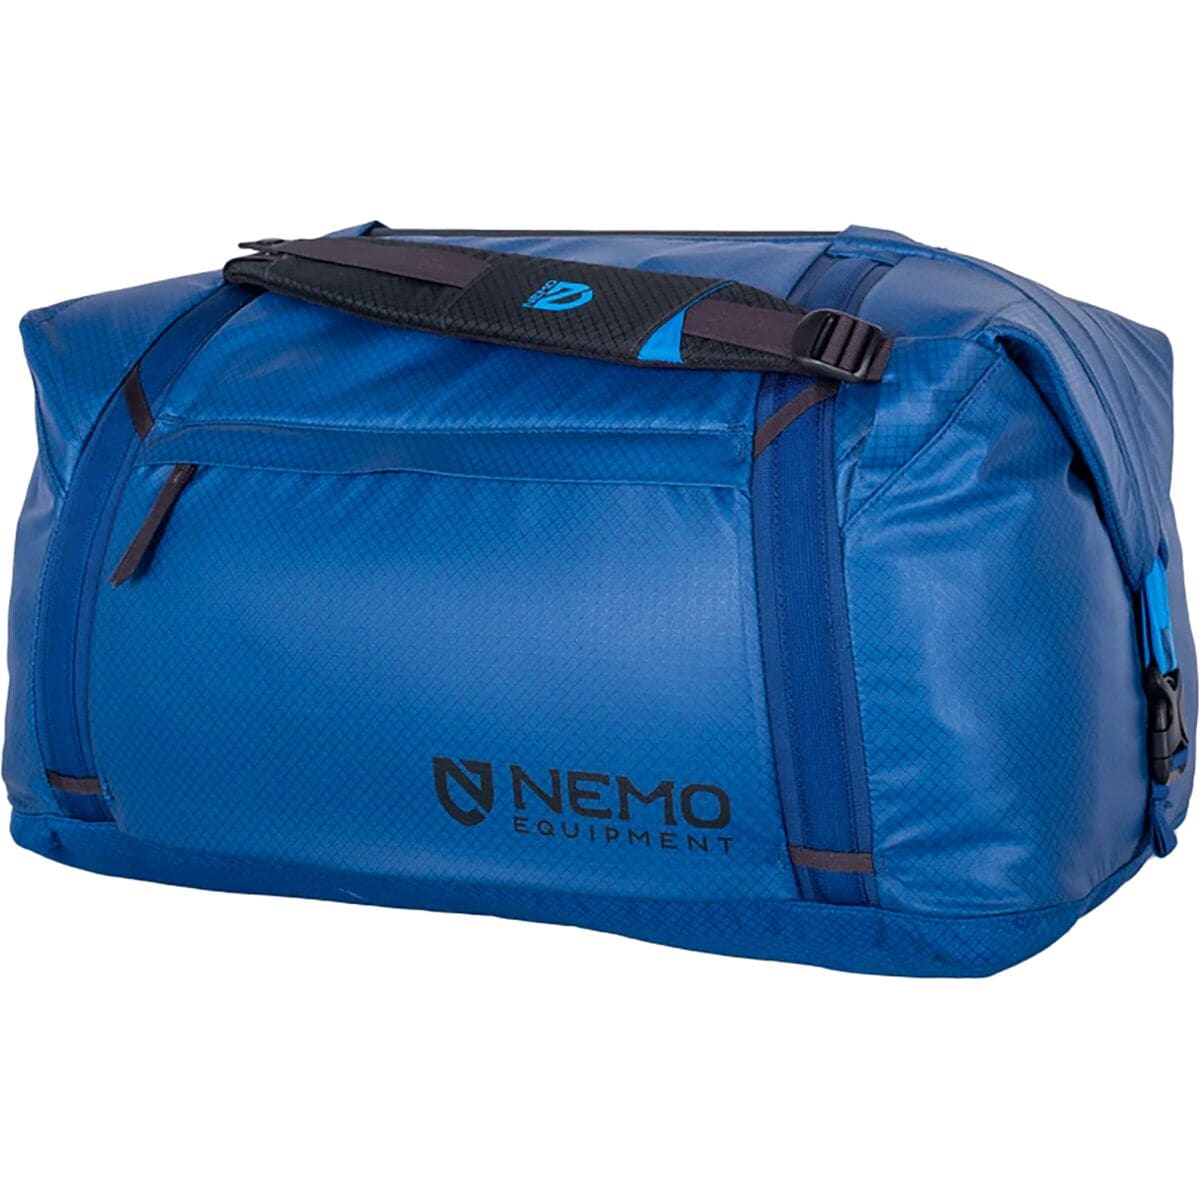 цена Двойная трансформируемая спортивная сумка объемом 70 л Nemo Equipment Inc., цвет lake